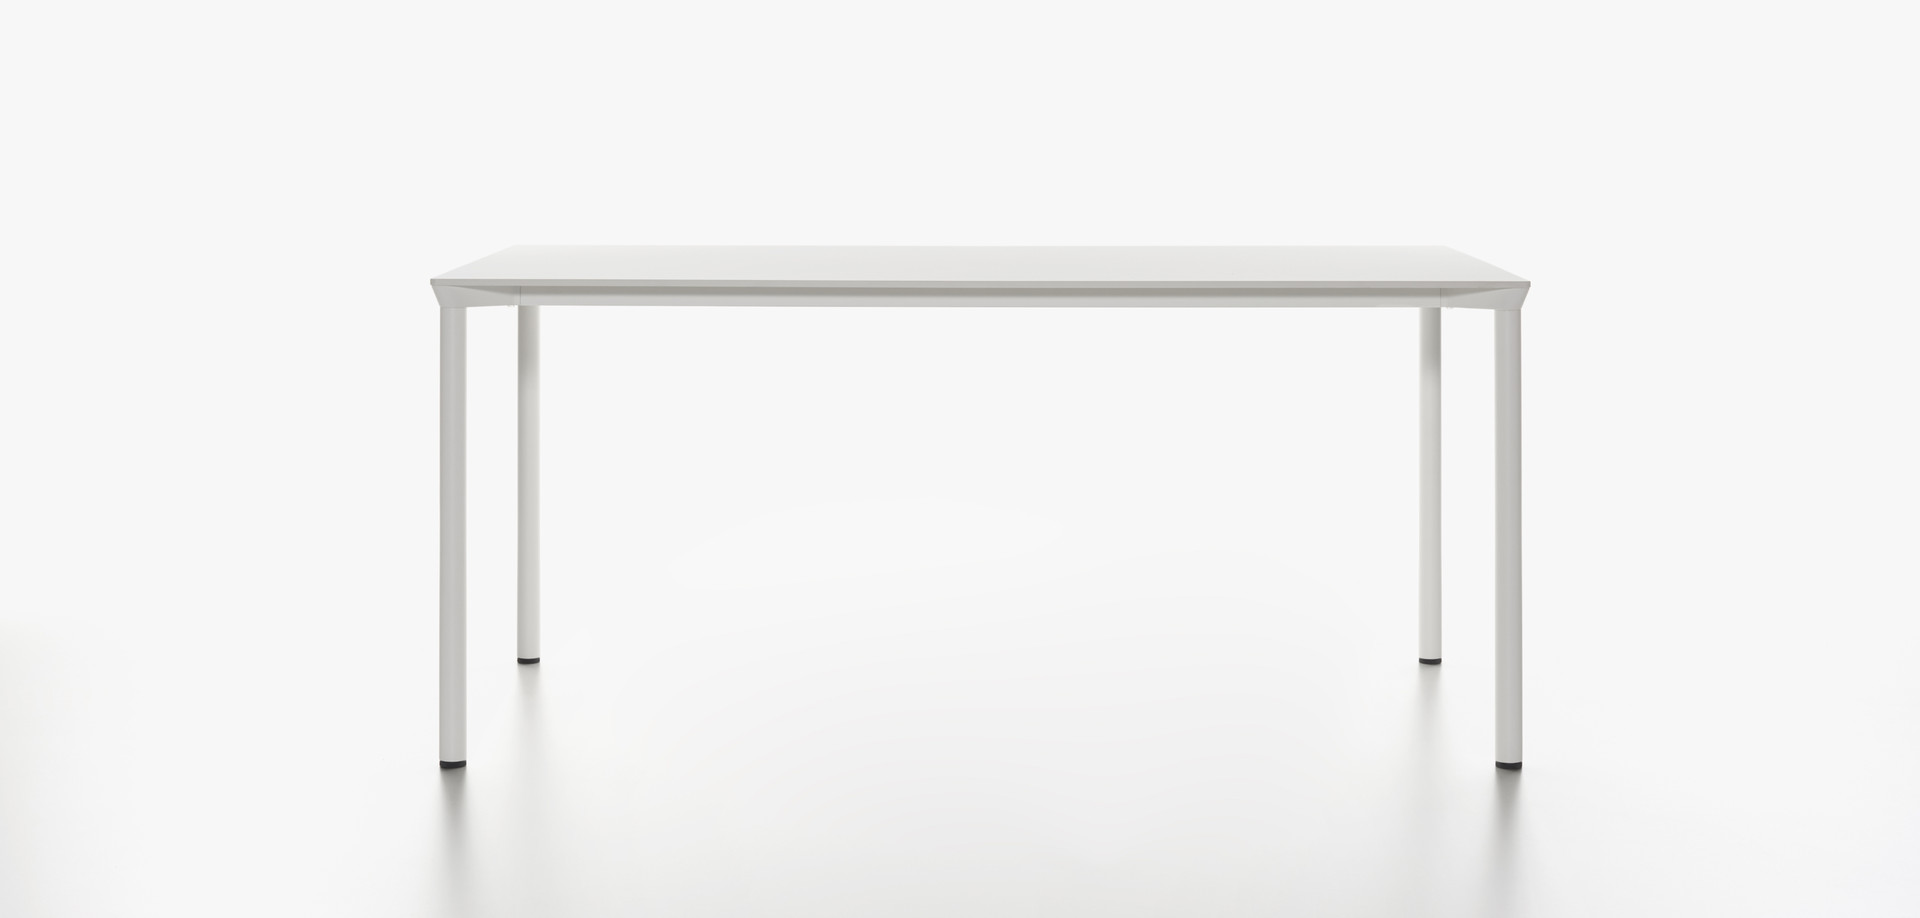 Plank - MONZA table rectangular, white HPL table top, white aluminum legs